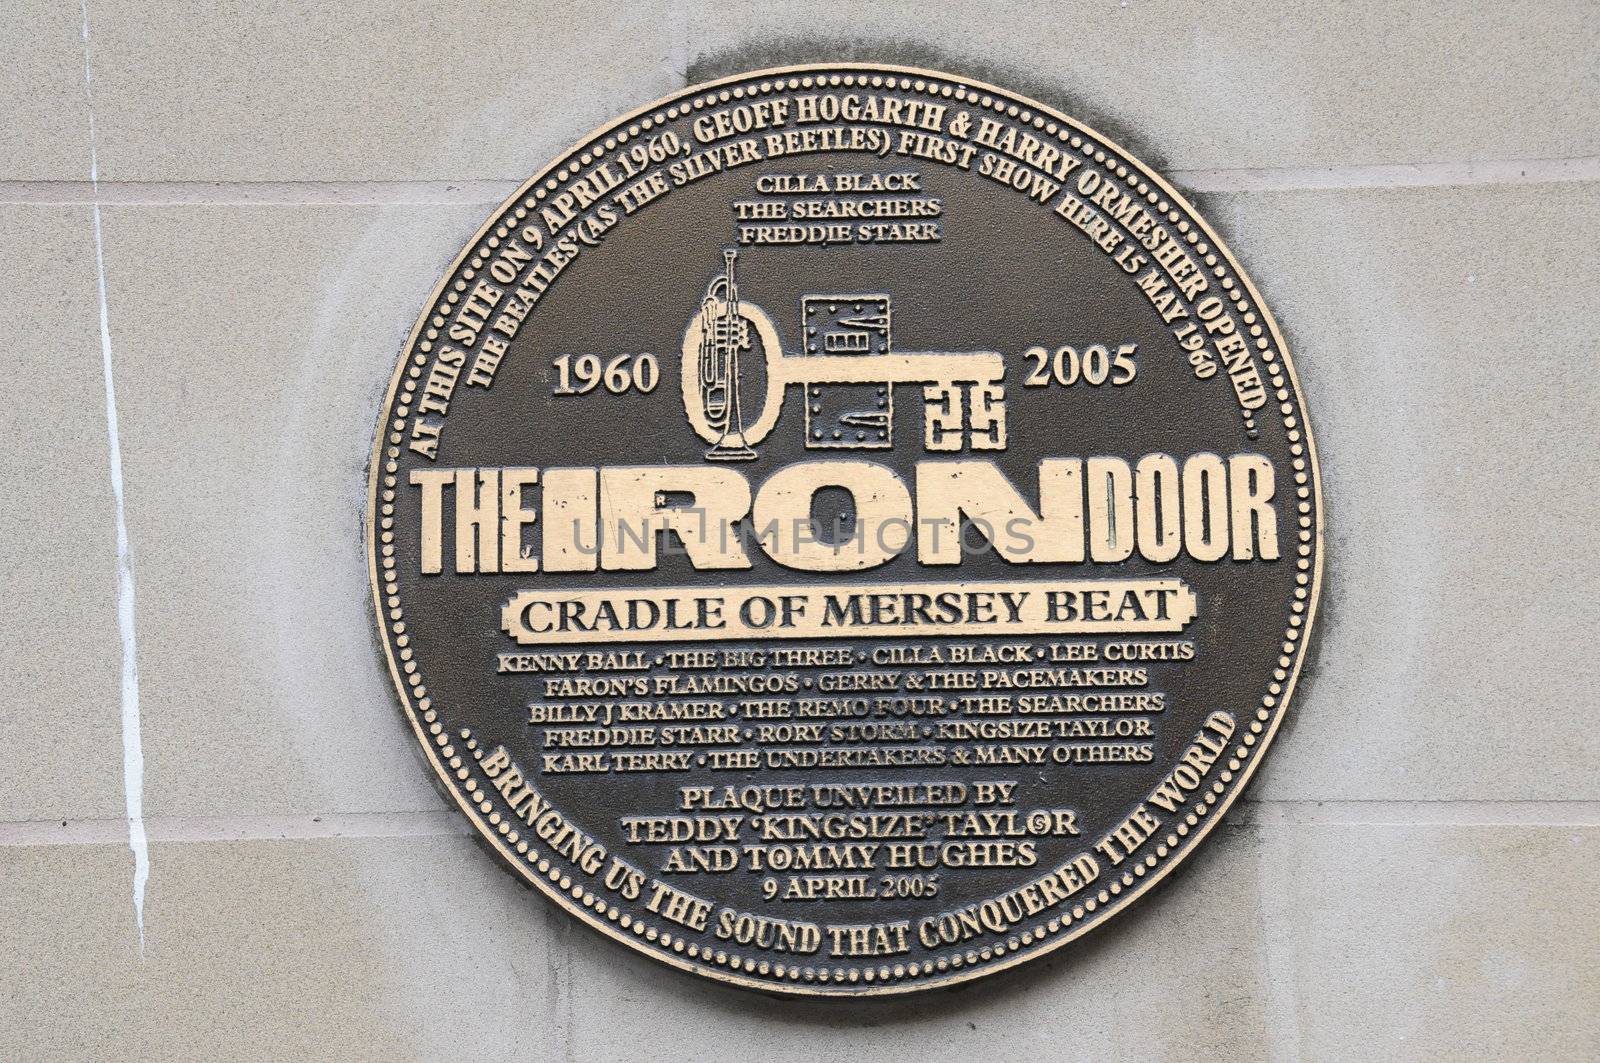 Iron Door Club Liverpool by gorilla